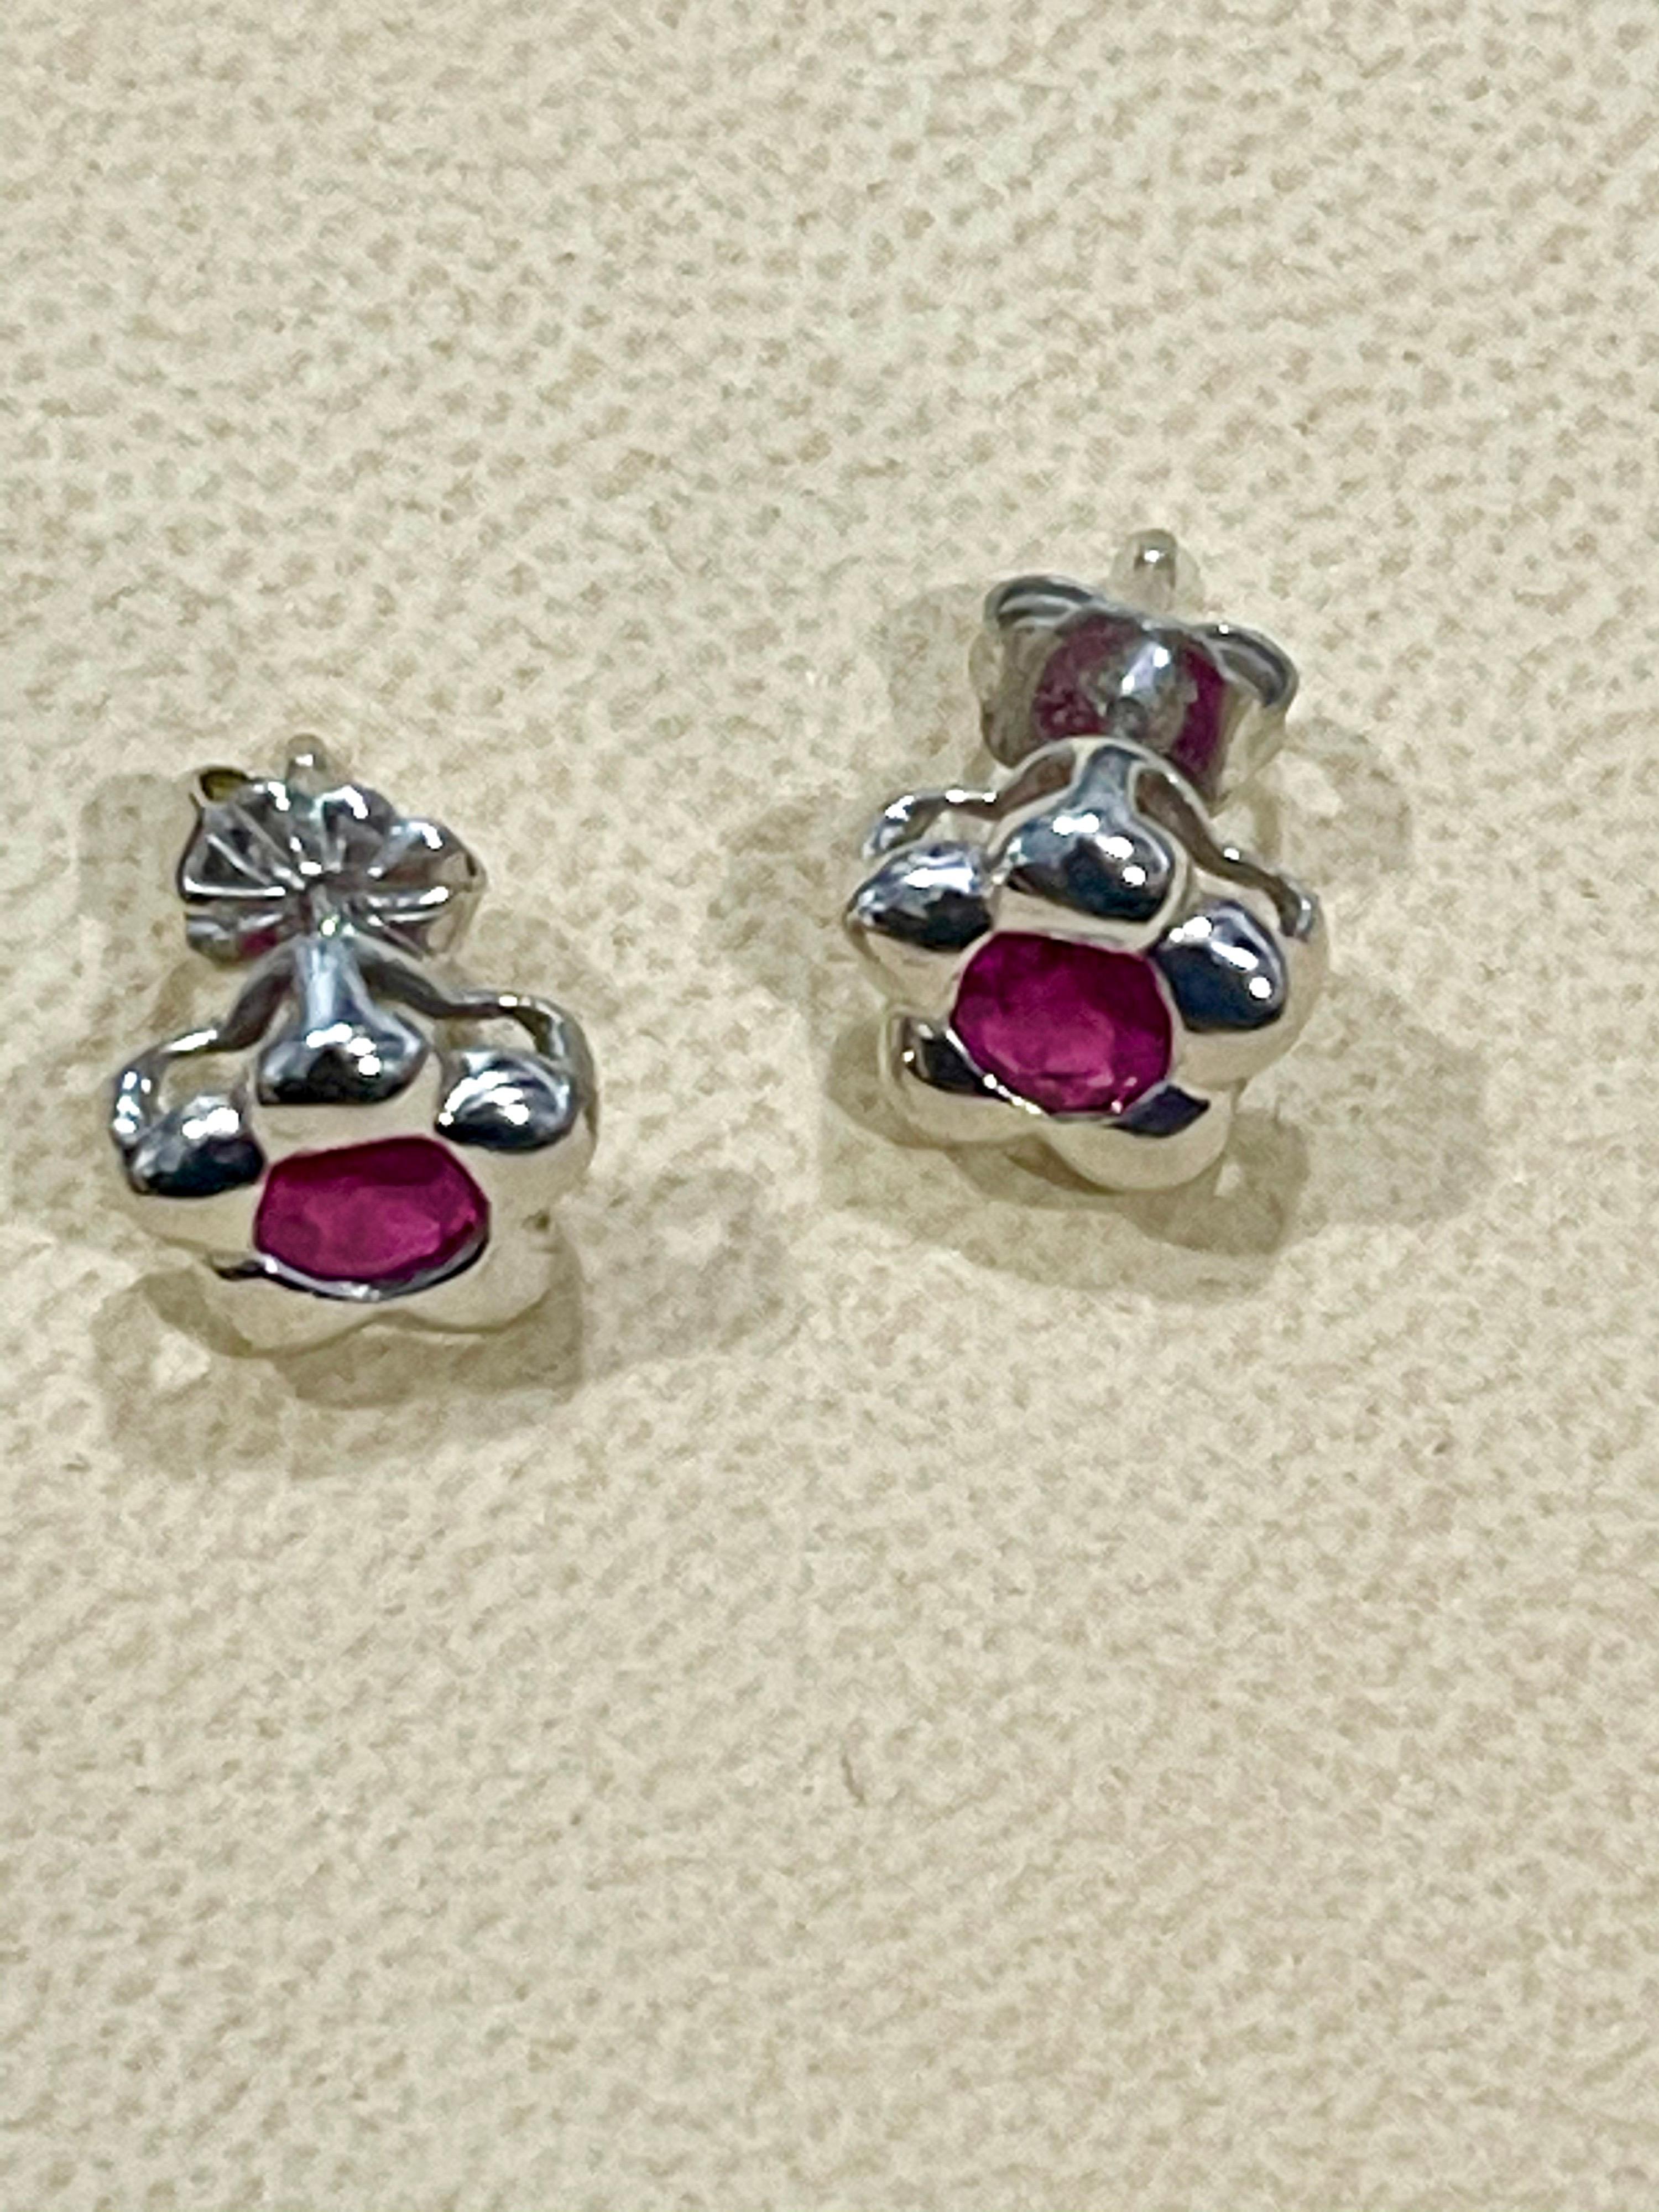 1 carat ruby earrings